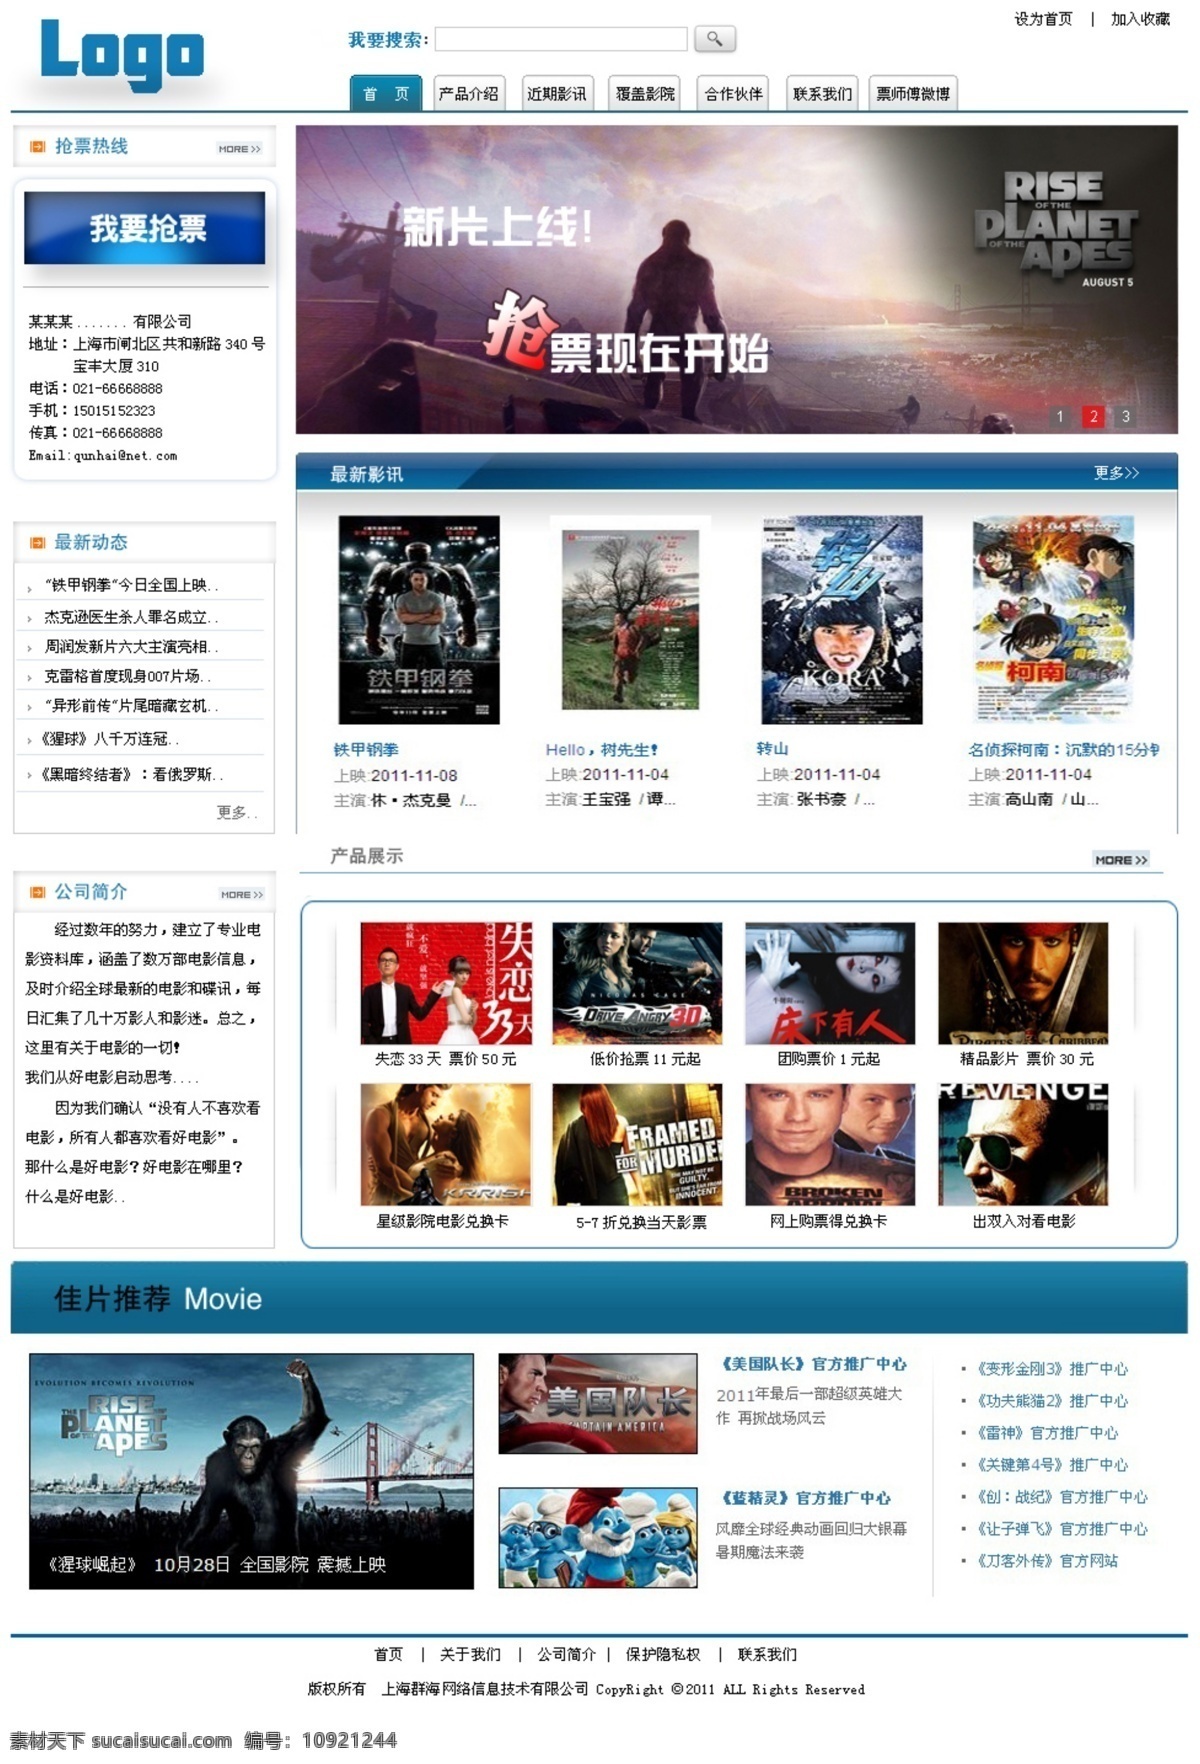 电影 电影票 团购 网页 网页模板 模板下载 网页素材 网站模板 网站素材 中文模版 源文件